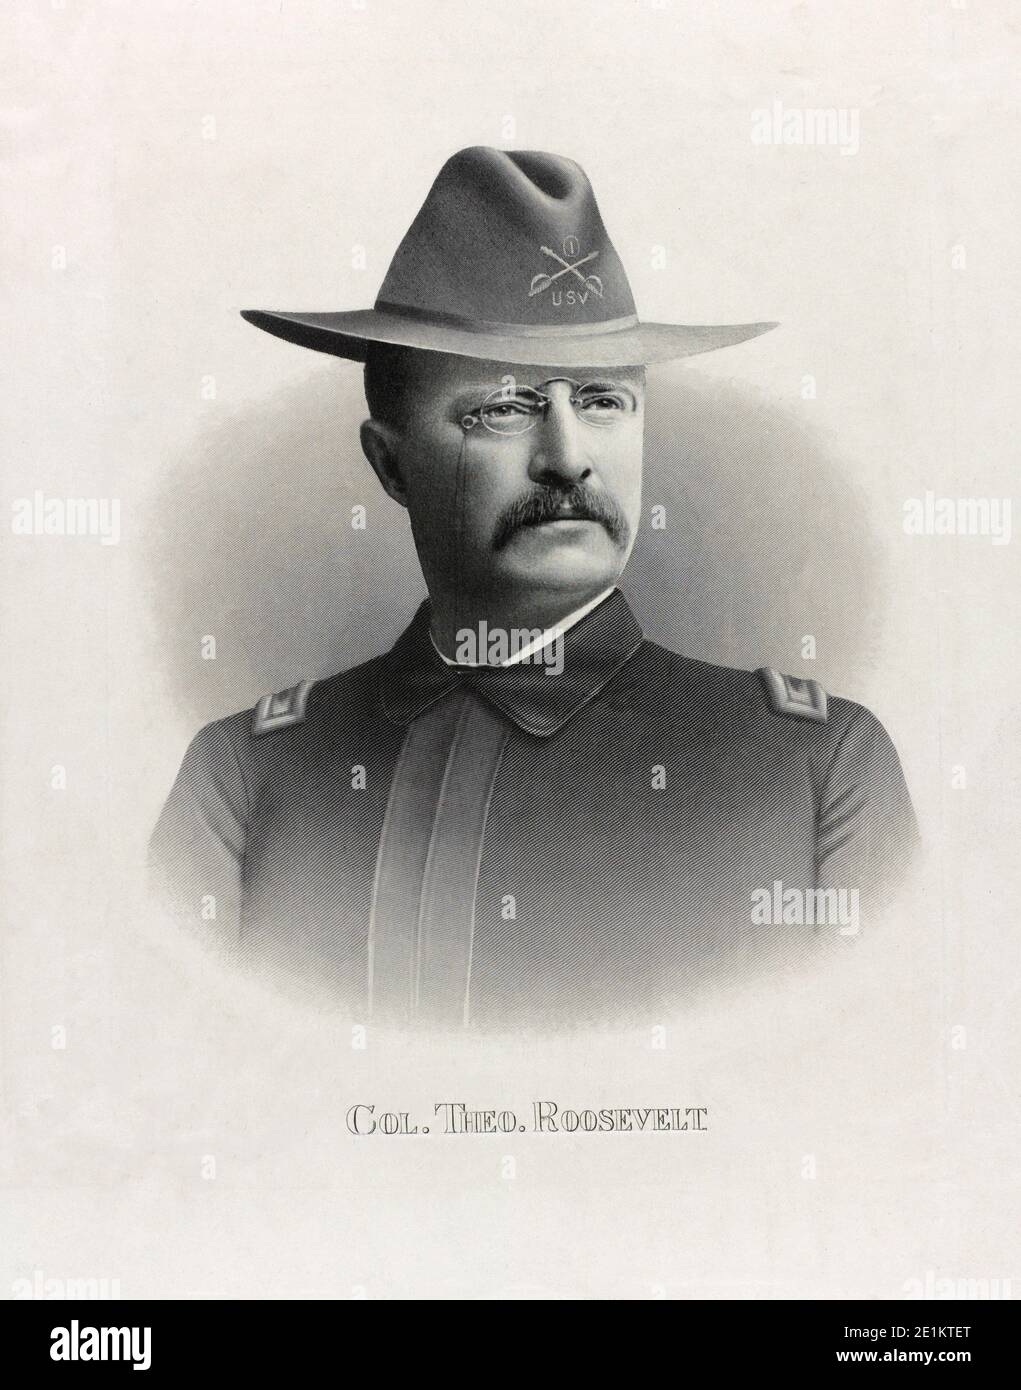 Photographie vintage montrant le colonel Theodore Roosevelt, portrait tête-et-épaules, portant l'uniforme USV. ÉTATS-UNIS. 1898 Banque D'Images